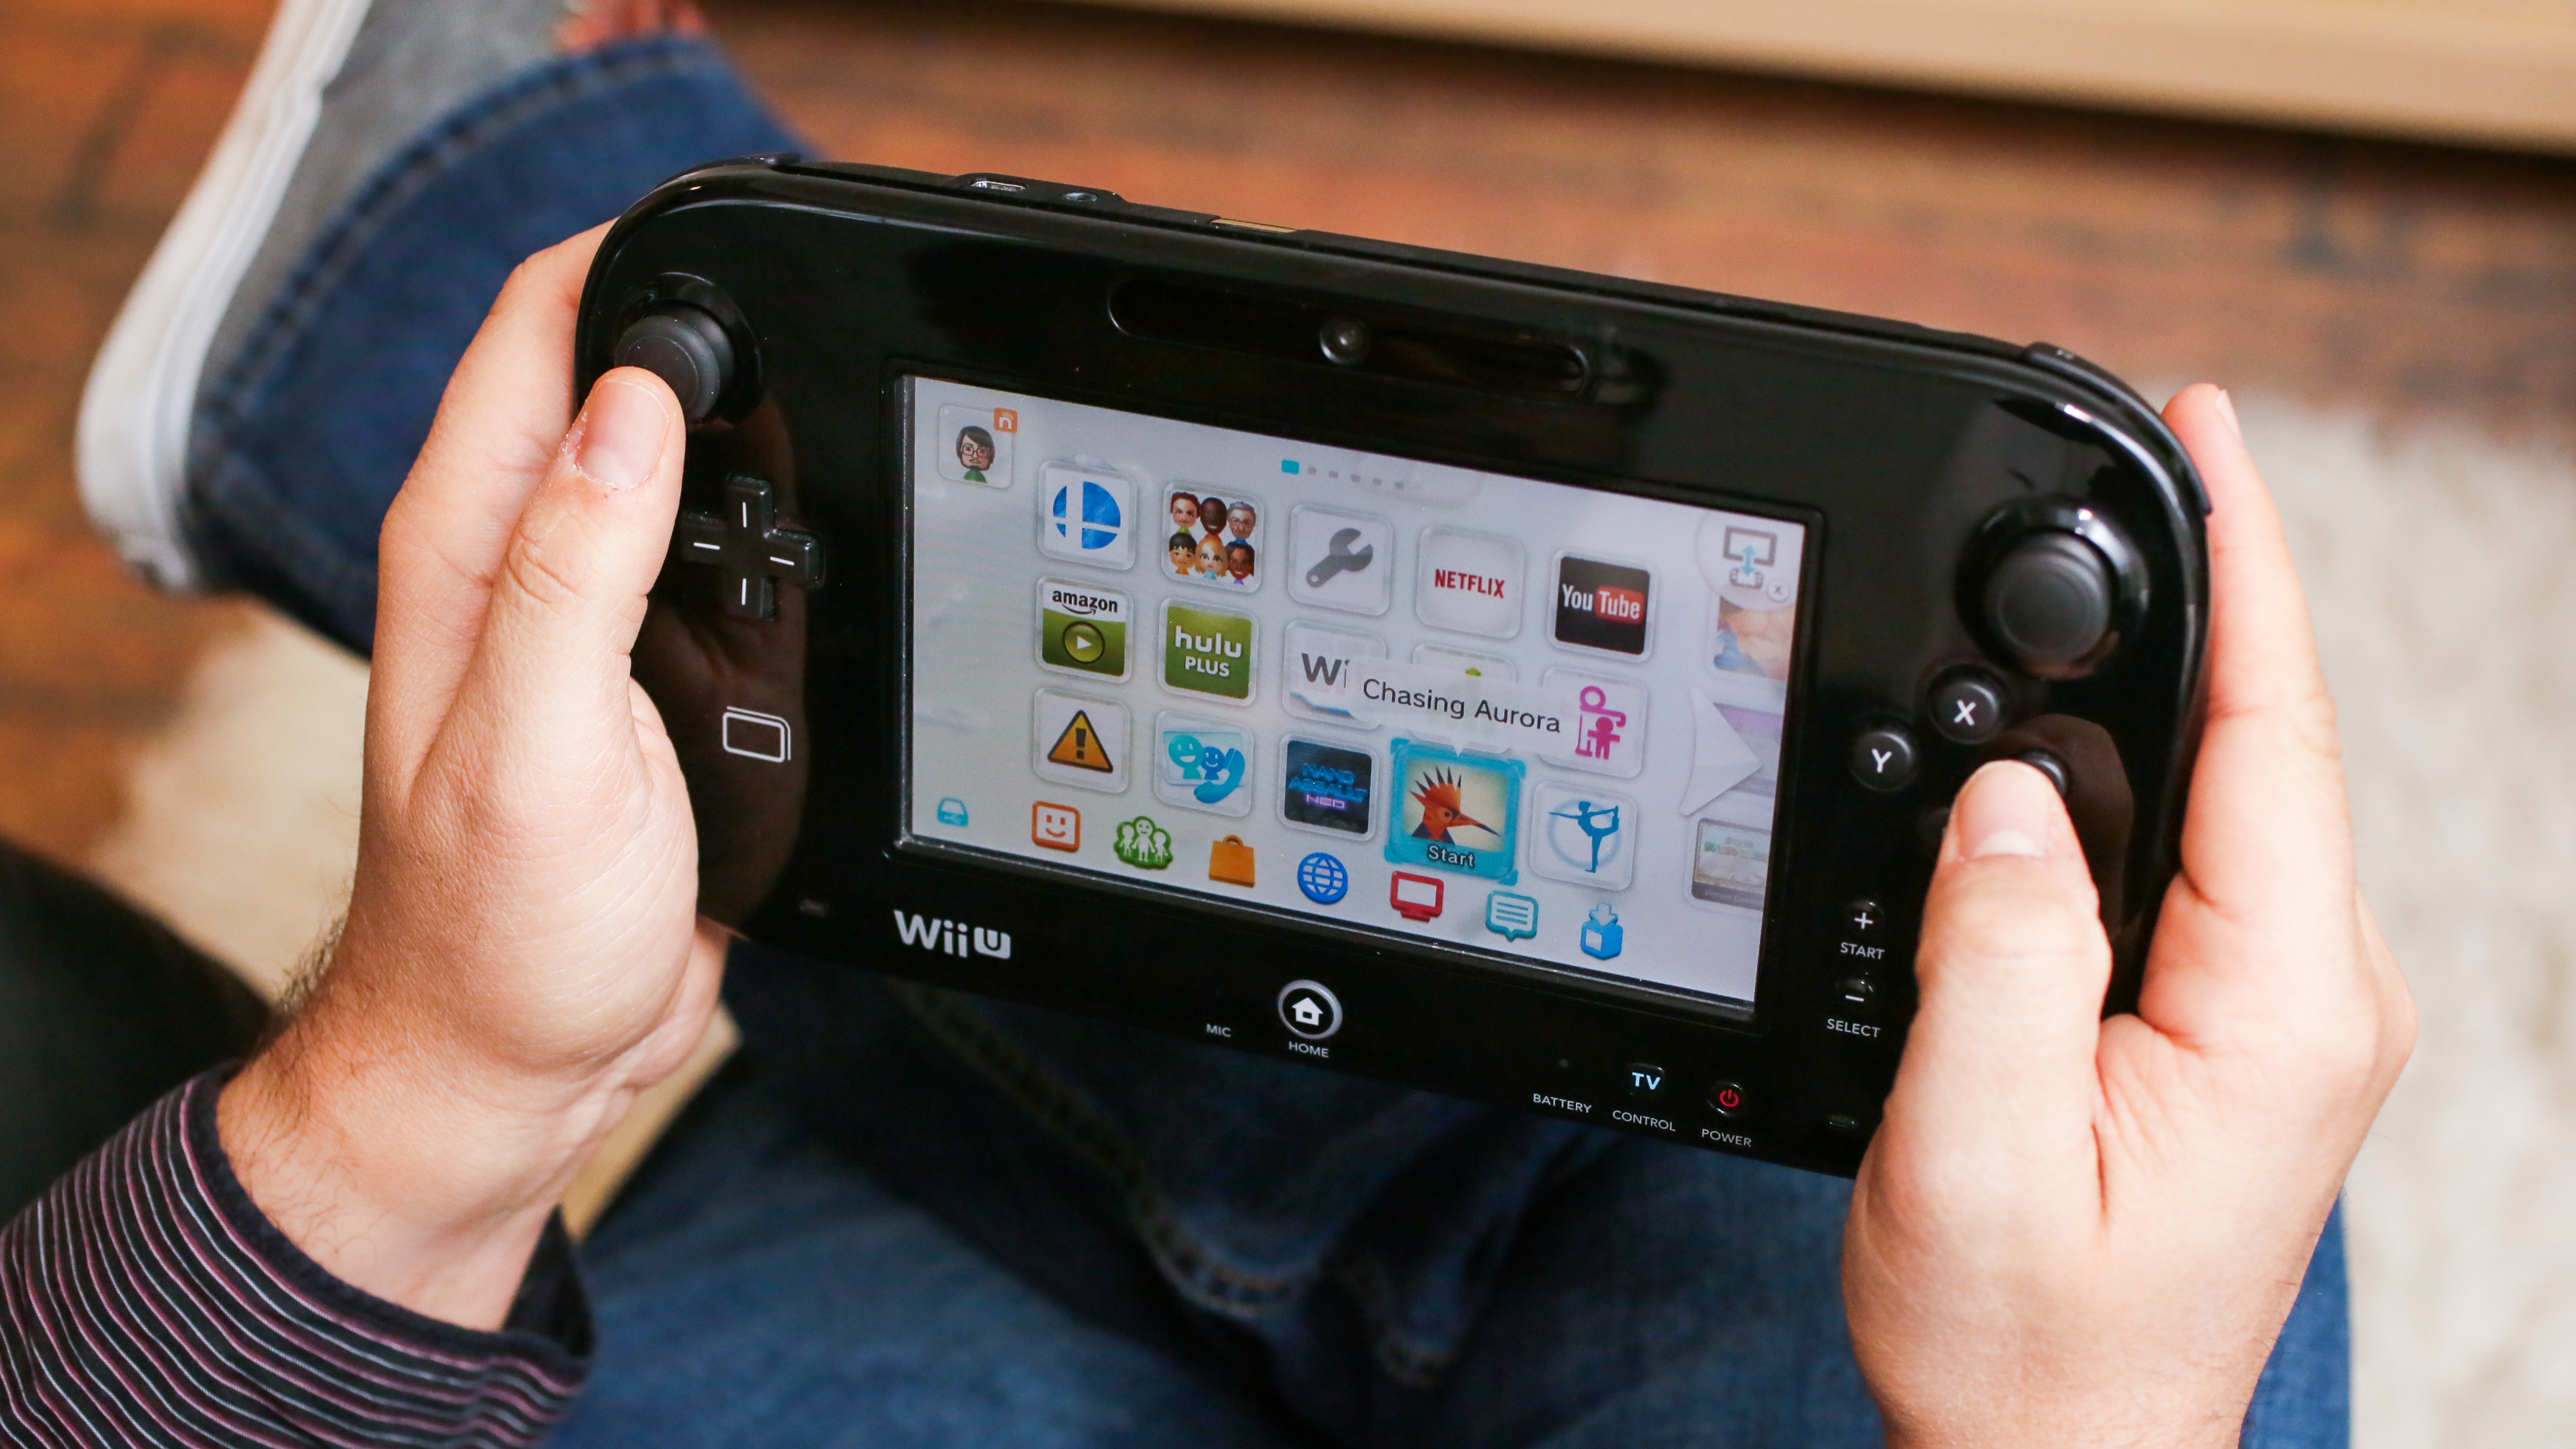 We wrześniu w Stanach Zjednoczonych sprzedano pierwsze Nintendo Wii U od maja 2022 roku